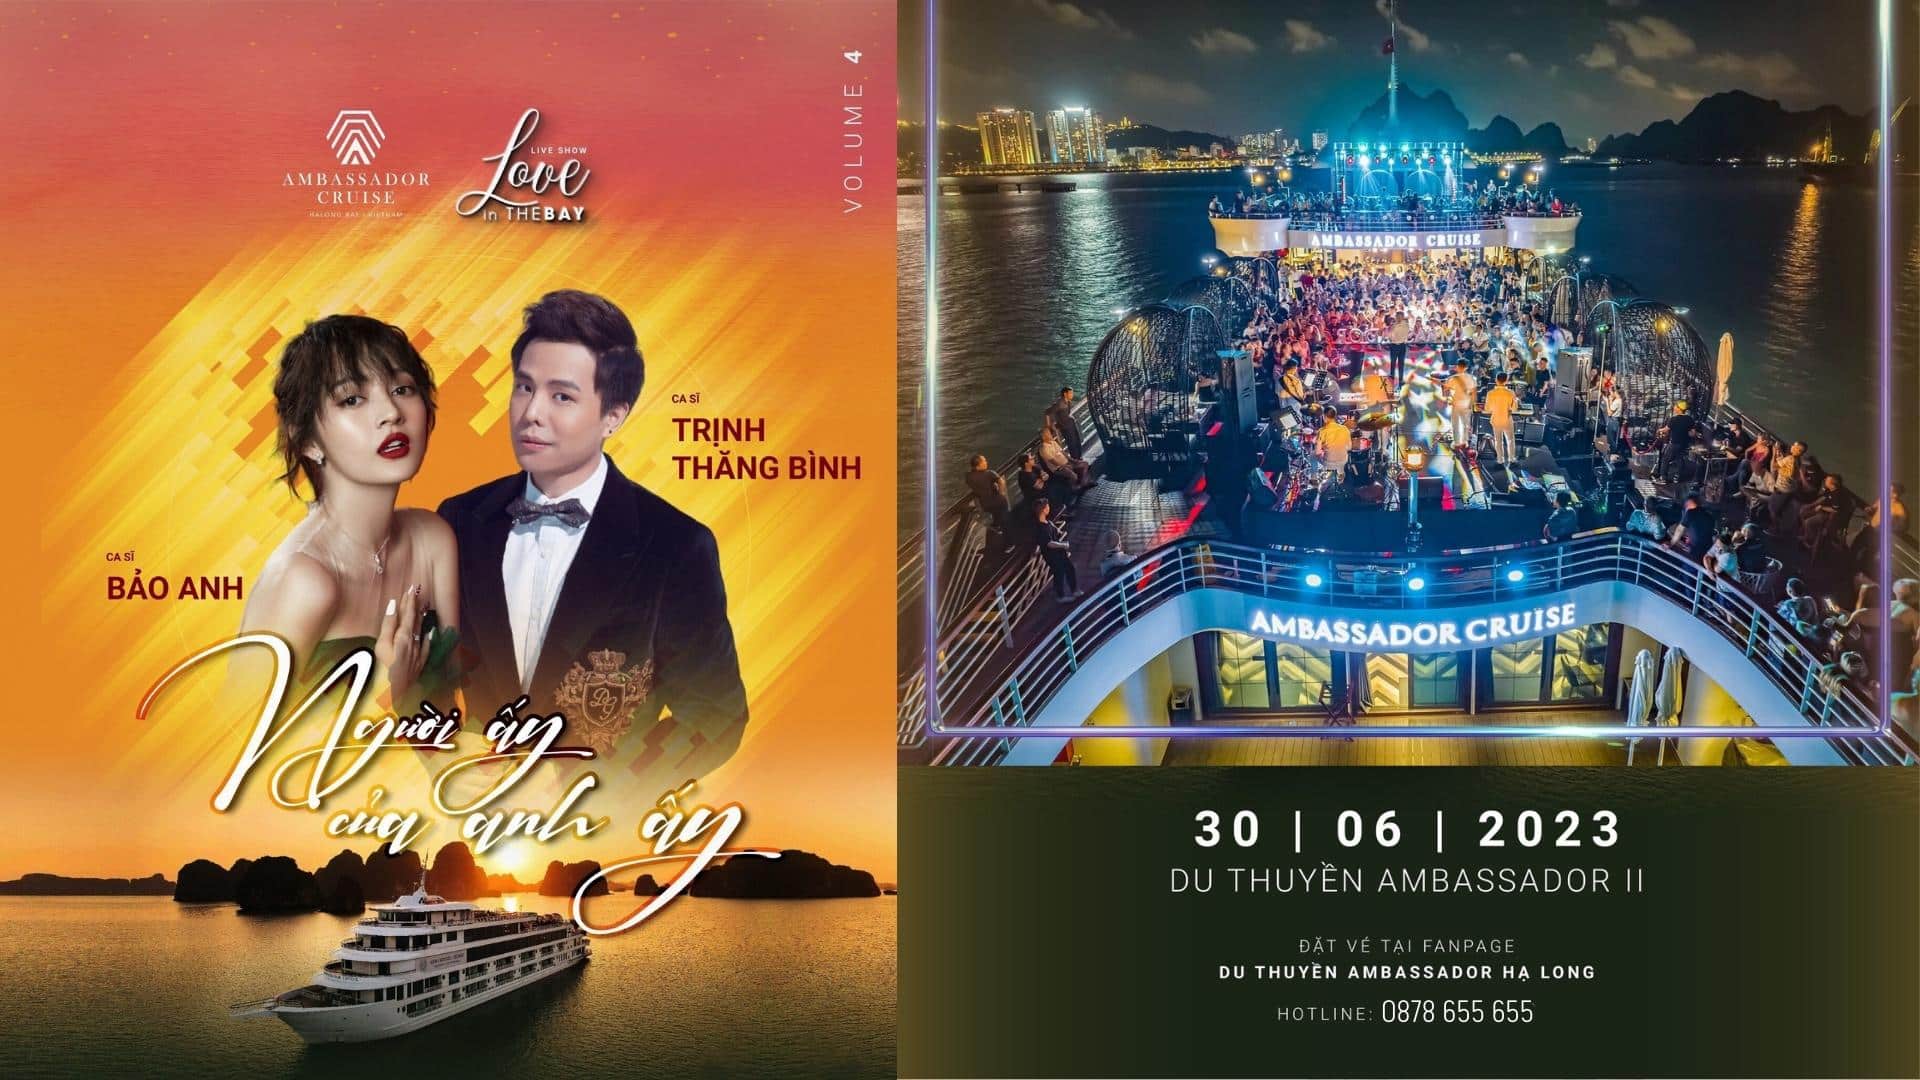 Liveshow Hoàng Hôn của em | Ca sĩ Bảo Anh & Trịnh Thăng Bình trên du thuyền Ambassador II | Sự kết hợp hoàn hảo giữa Liveshow Ca nhạc và Du lịch Hạ Long năm 2023